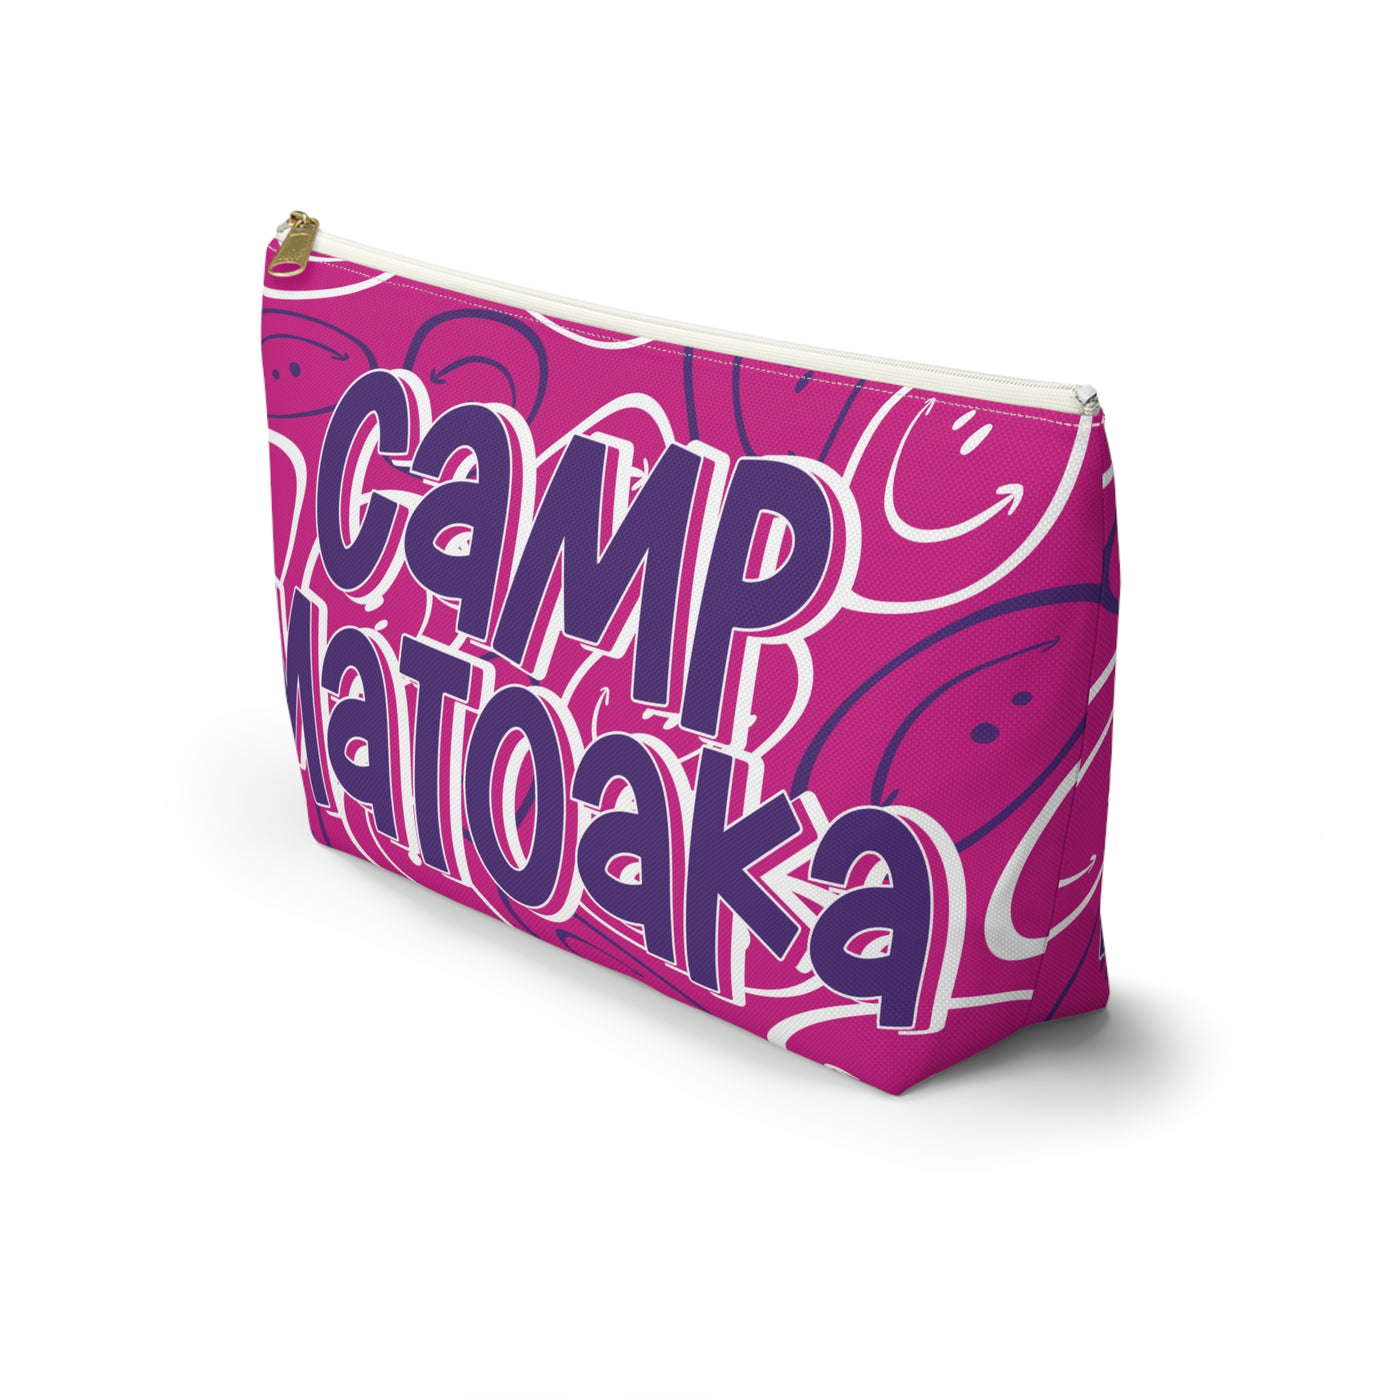 Camp Matoaka Pink Makeup Bag